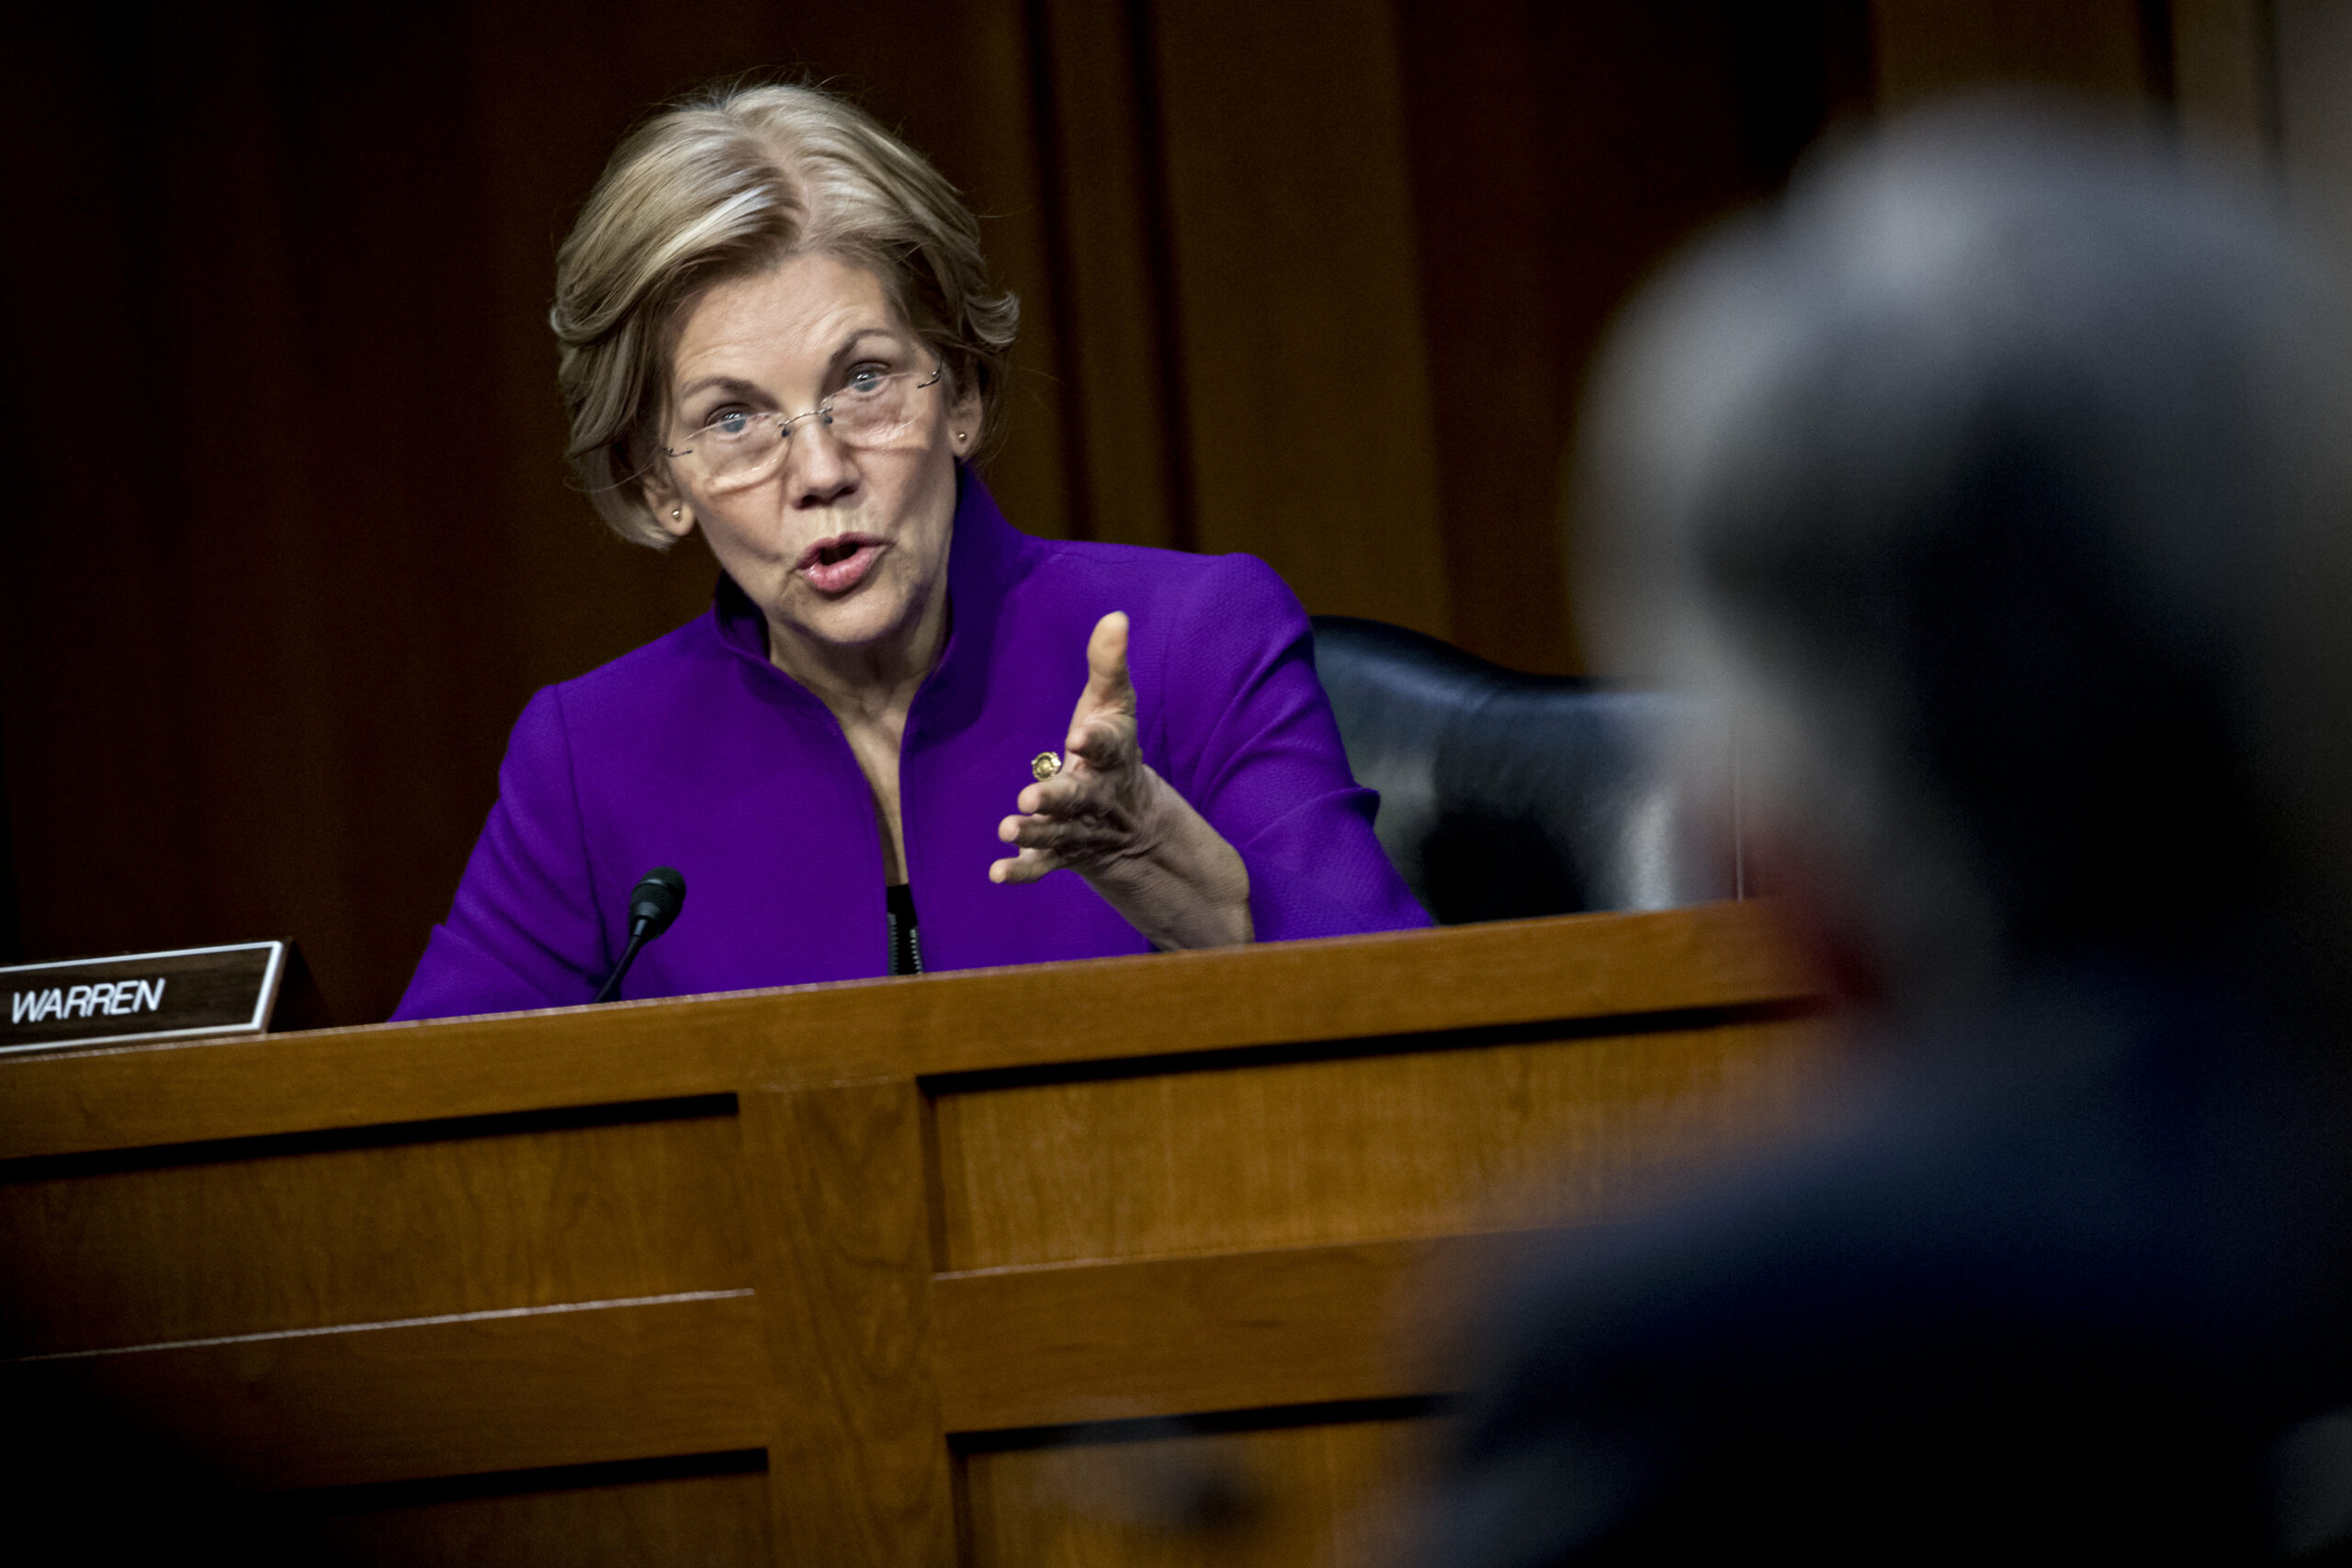 Senatorin Elizabeth Warren drängt Fed-Vorsitzenden Powell, „astronomische“ Zinsen zu senken und den Immobiliendruck zu lindern